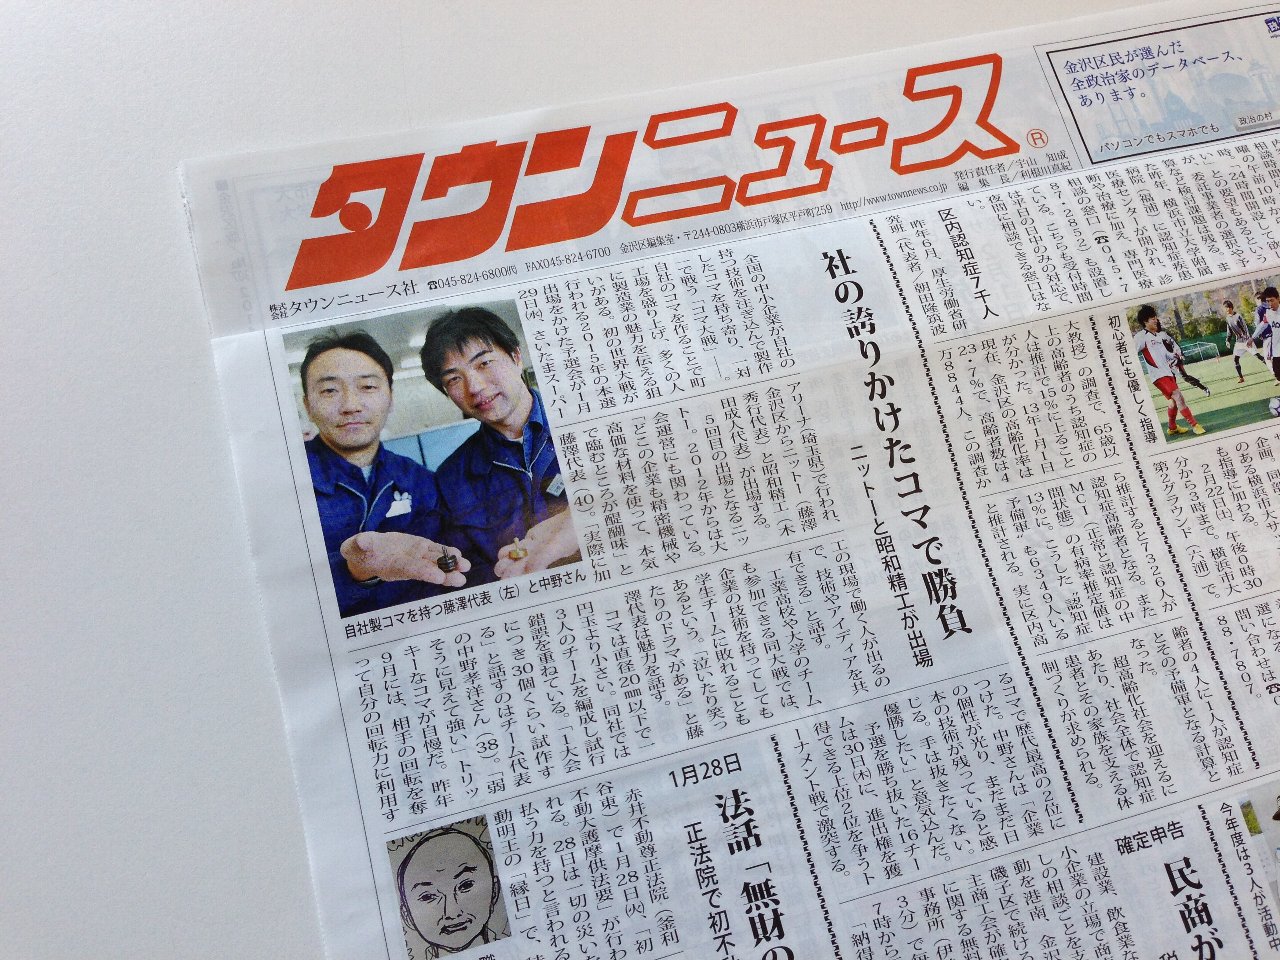 1月23日『タウンニュース横浜金沢区版』に掲載